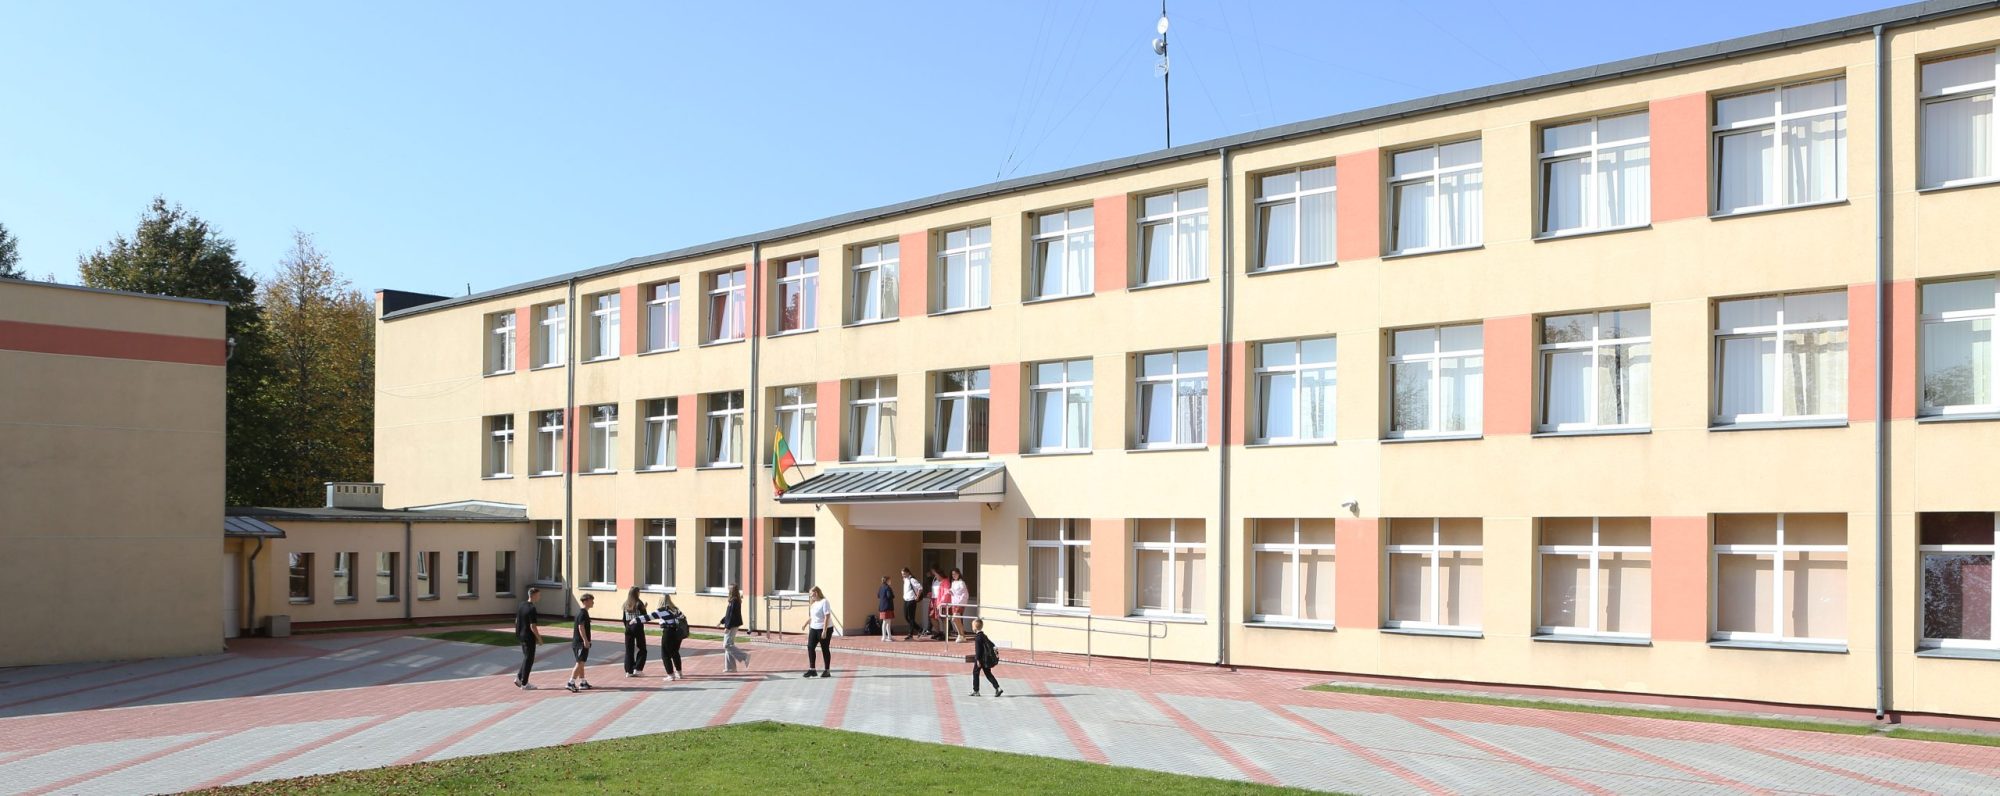 Gimnazjum imienia Pawła Ksawerego Brzostowskiego w Turgielach